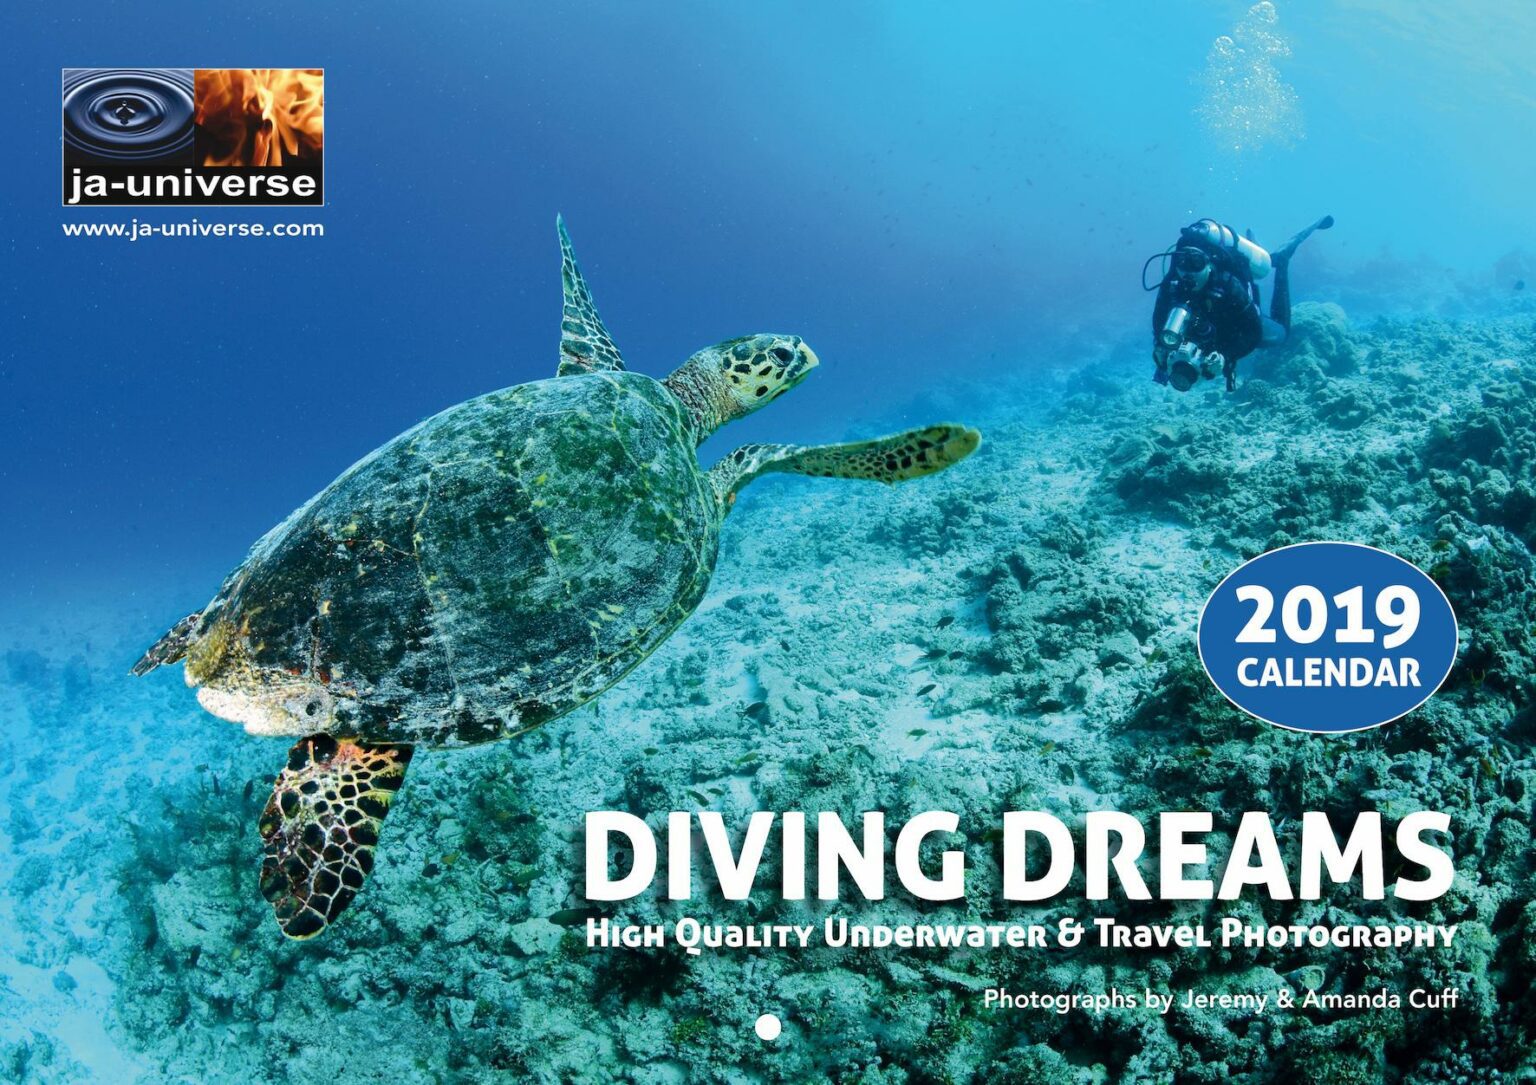 Diving Dreams 2019 Calendar